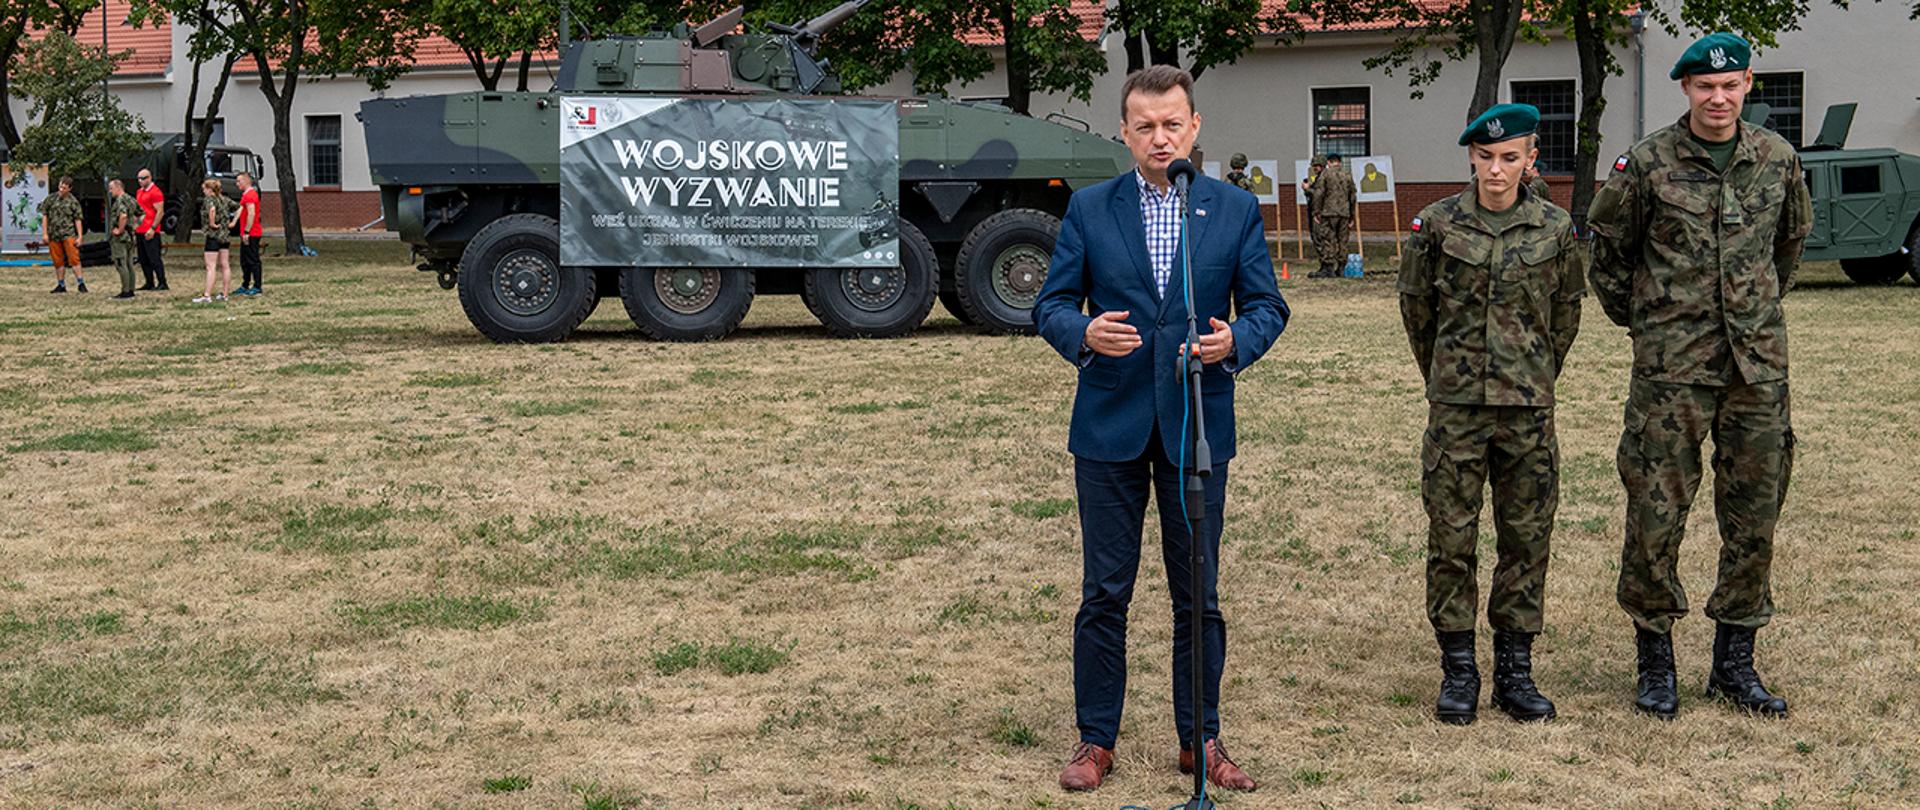 Wojskowe Wyzwanie w Centrum Szkolenia Wojsk Lądowych w Poznaniu